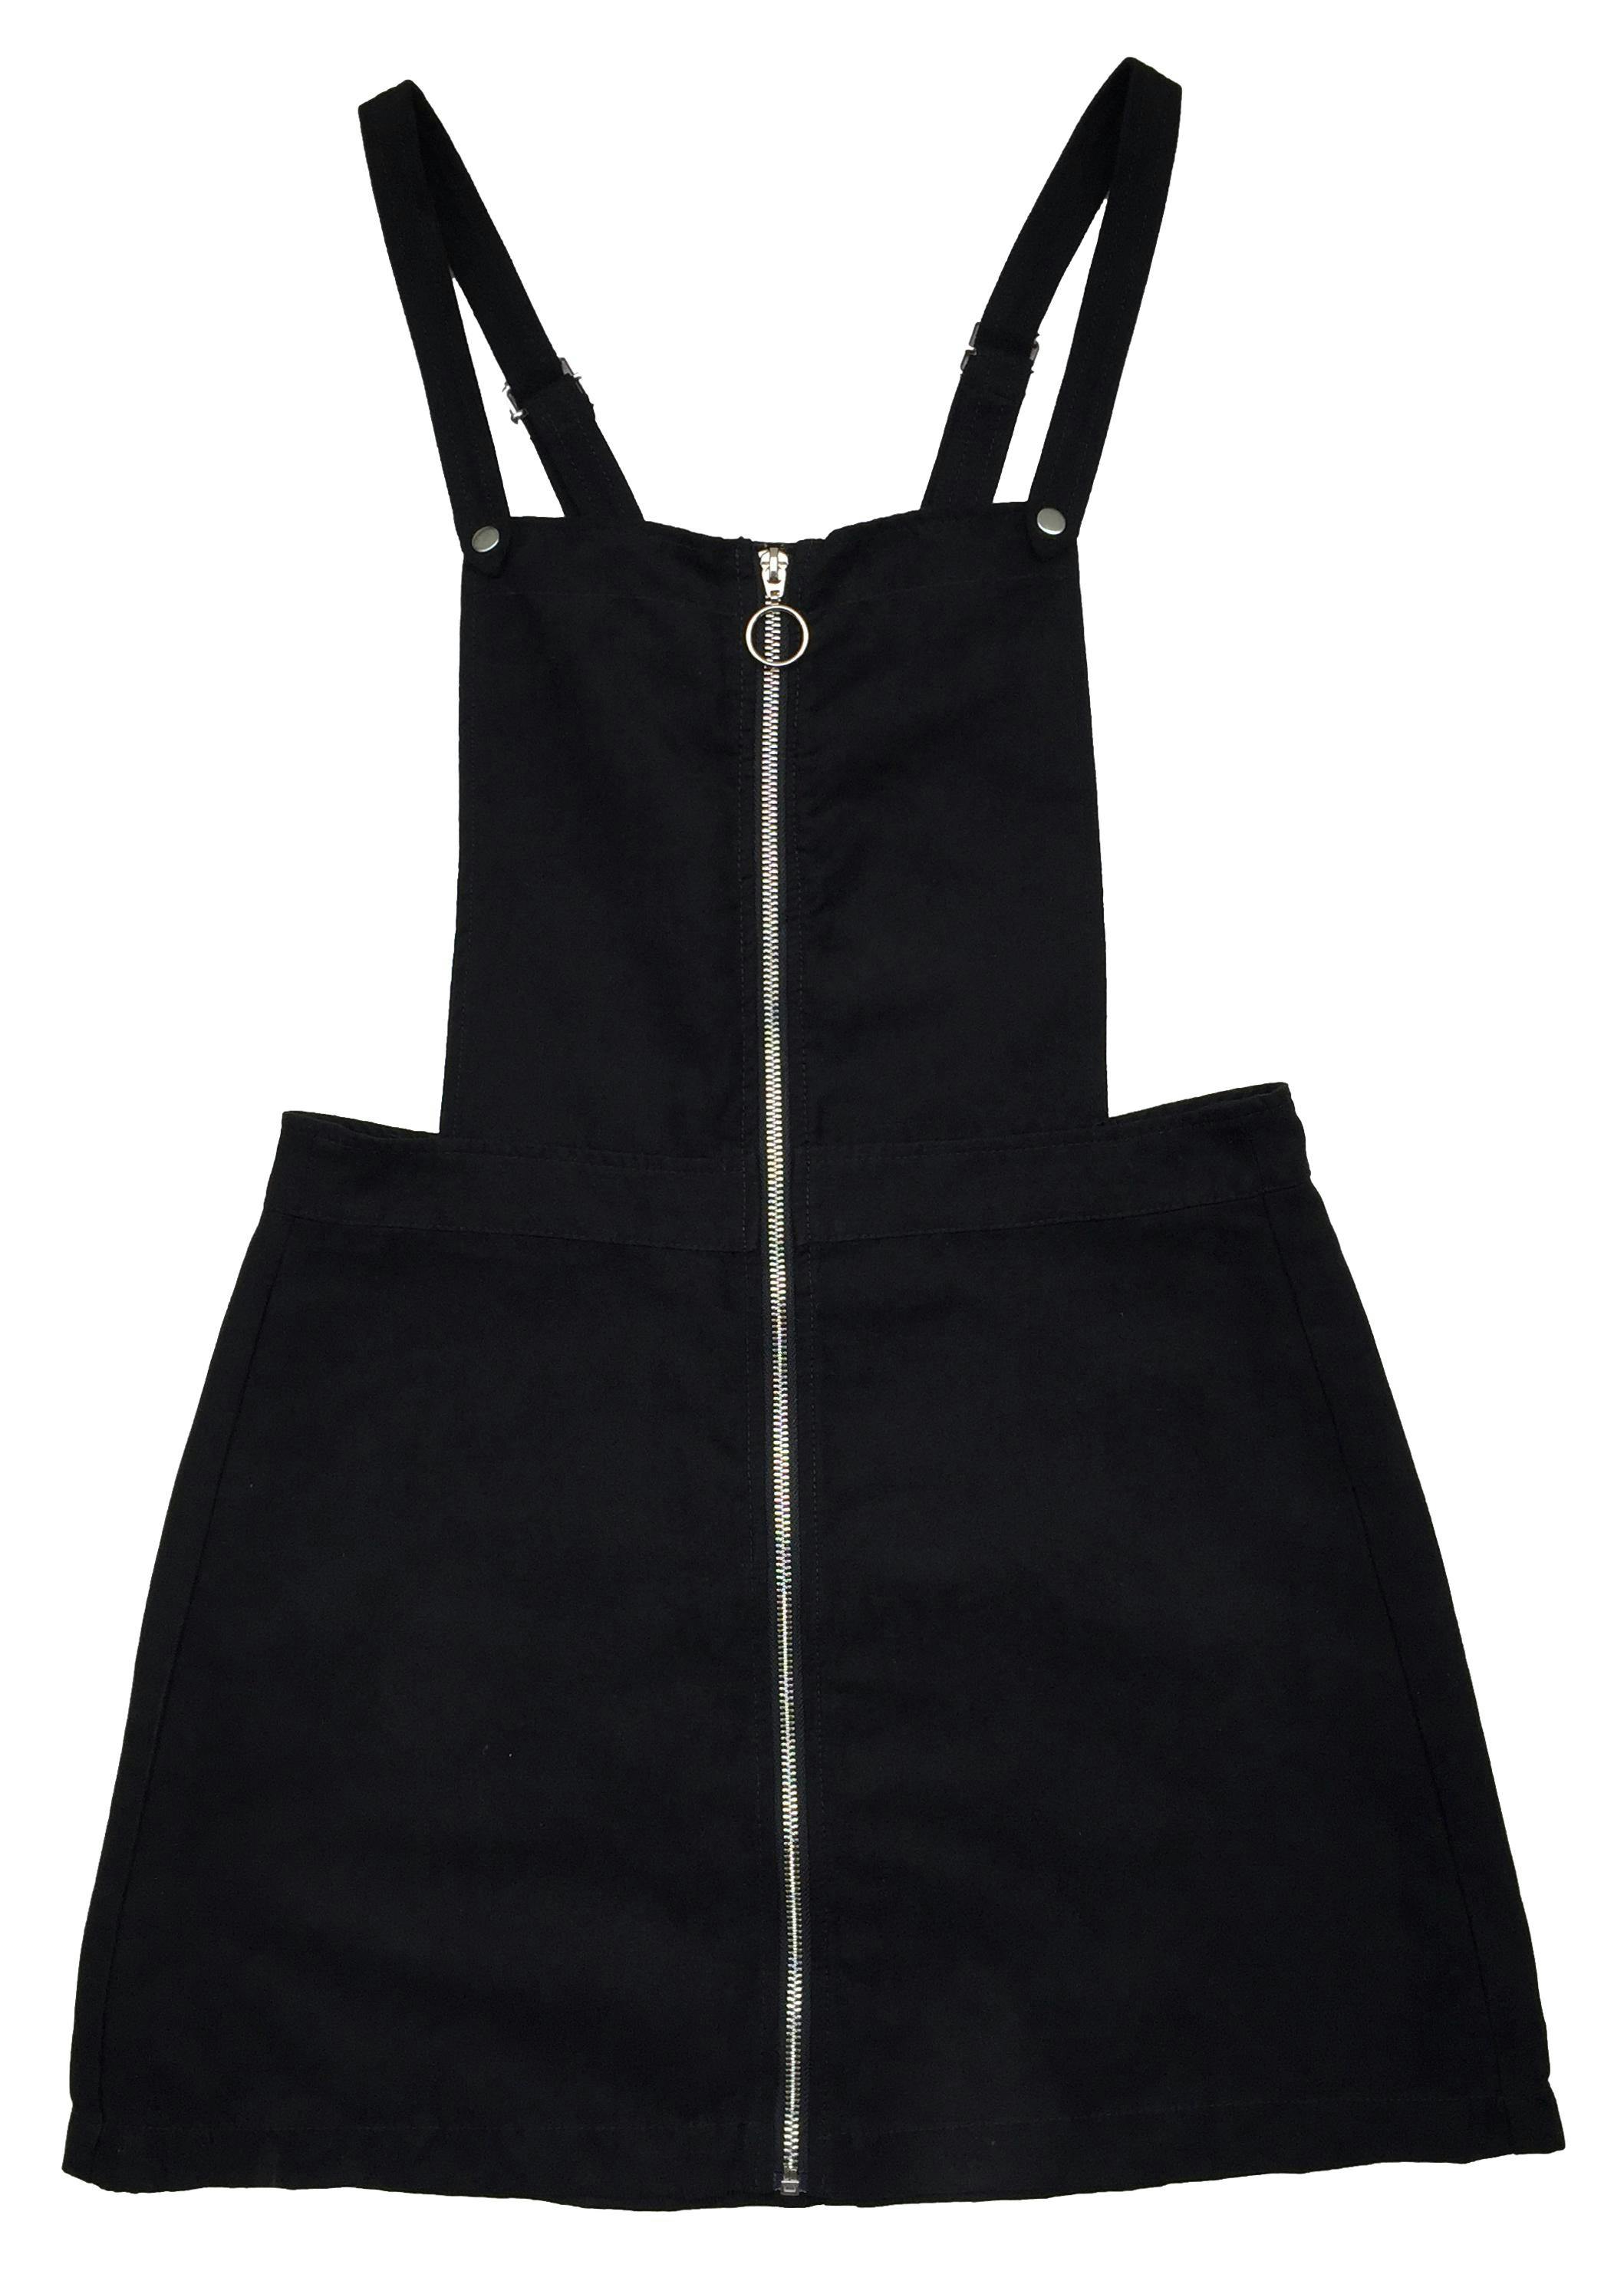 Falda negra stretch con textura de hilo. Largo 48cm Talla S/M